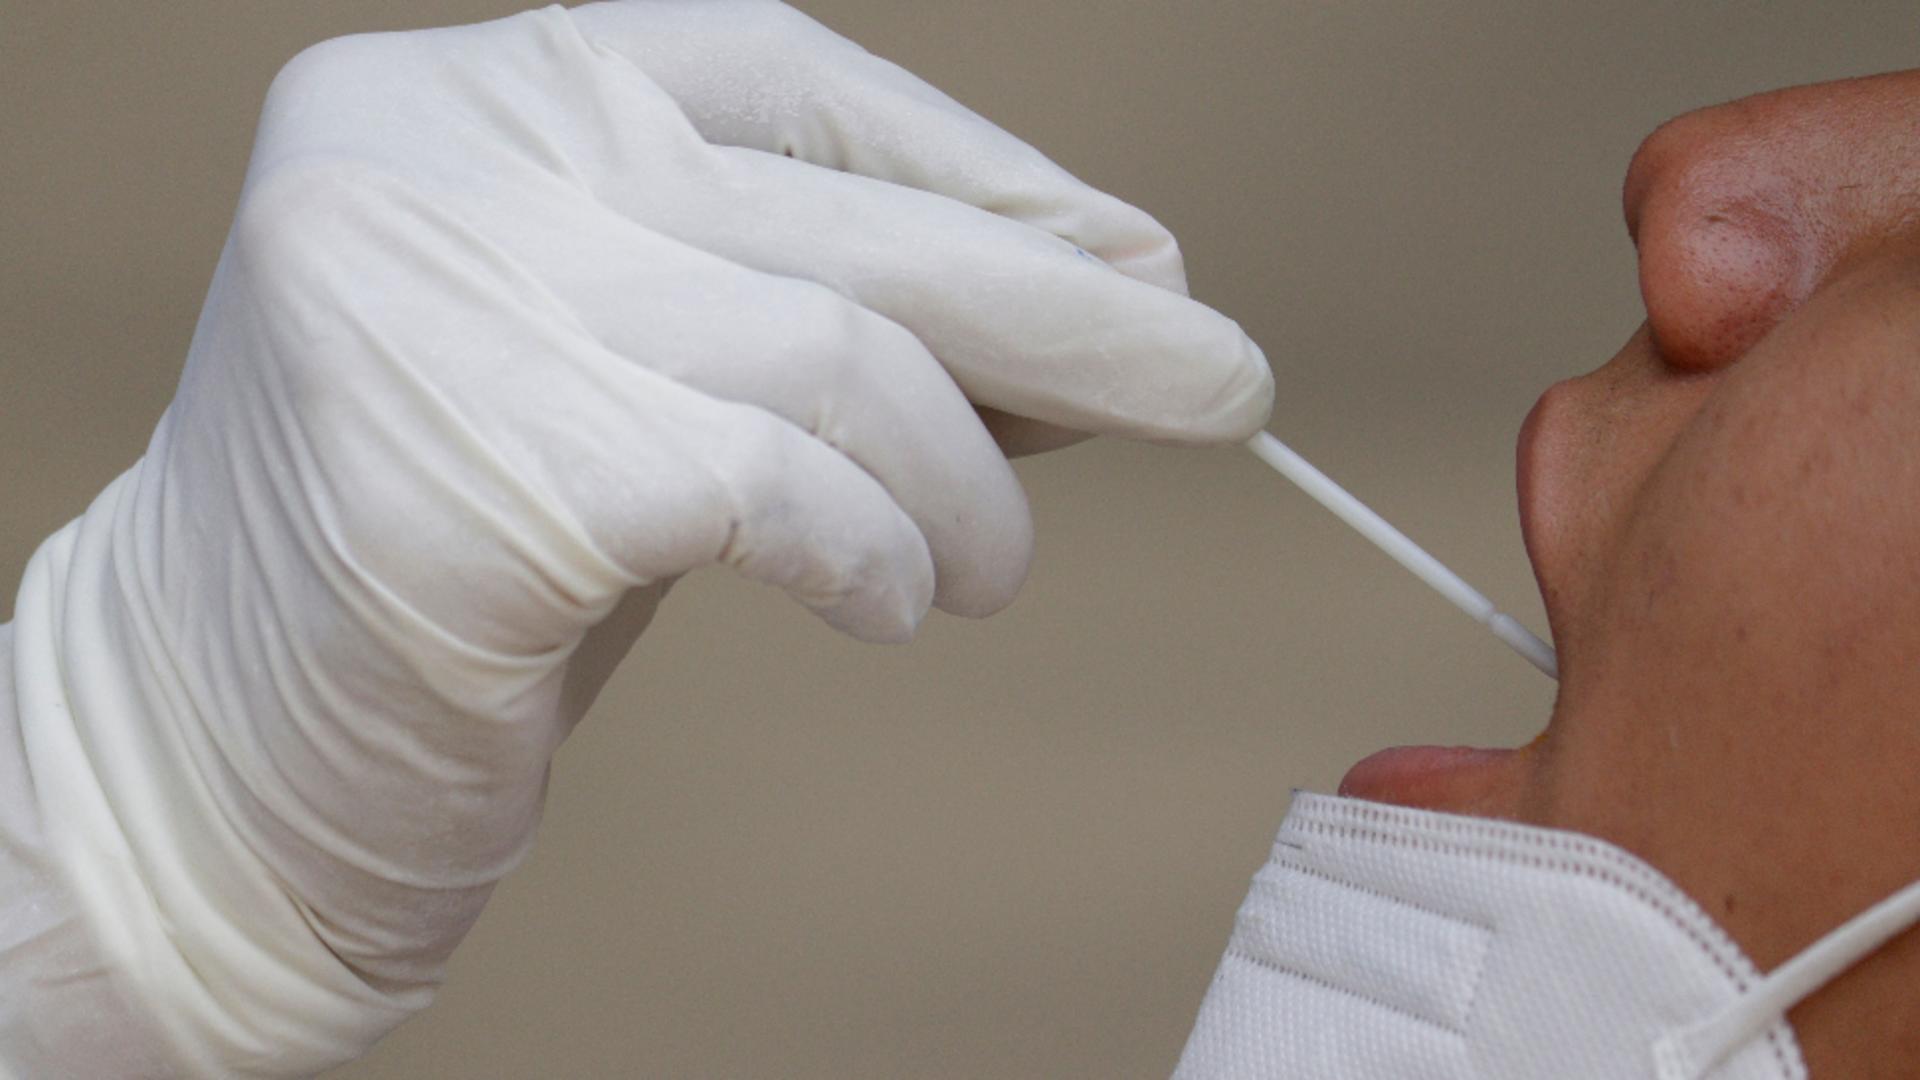 Nevaccinații ar putea fi testați gratuit 45 sau 60 de zile. Foto: Profi Media